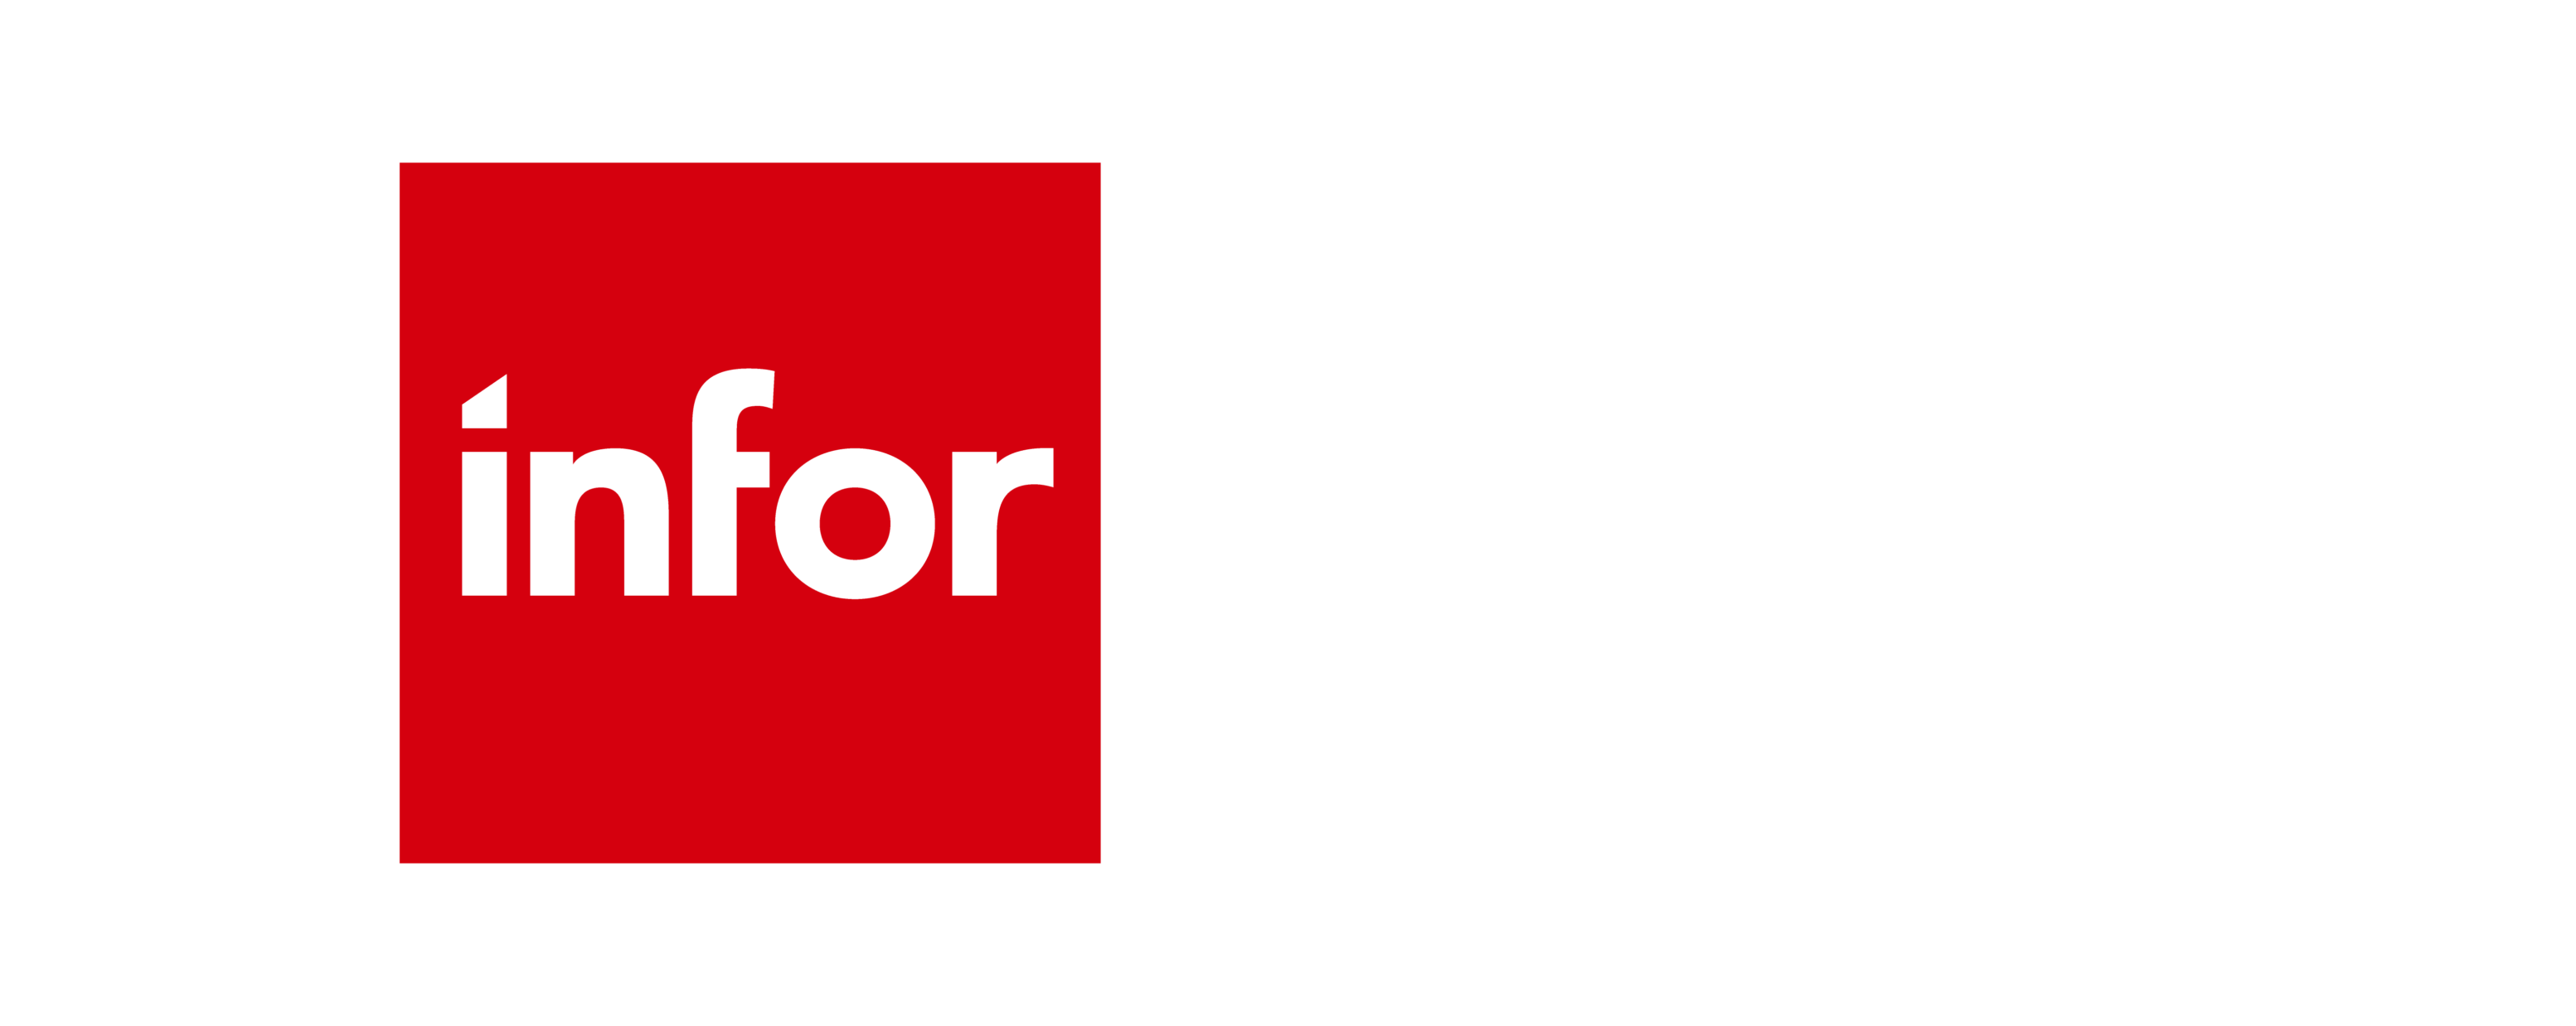 Infor_Alliance_Partner logo